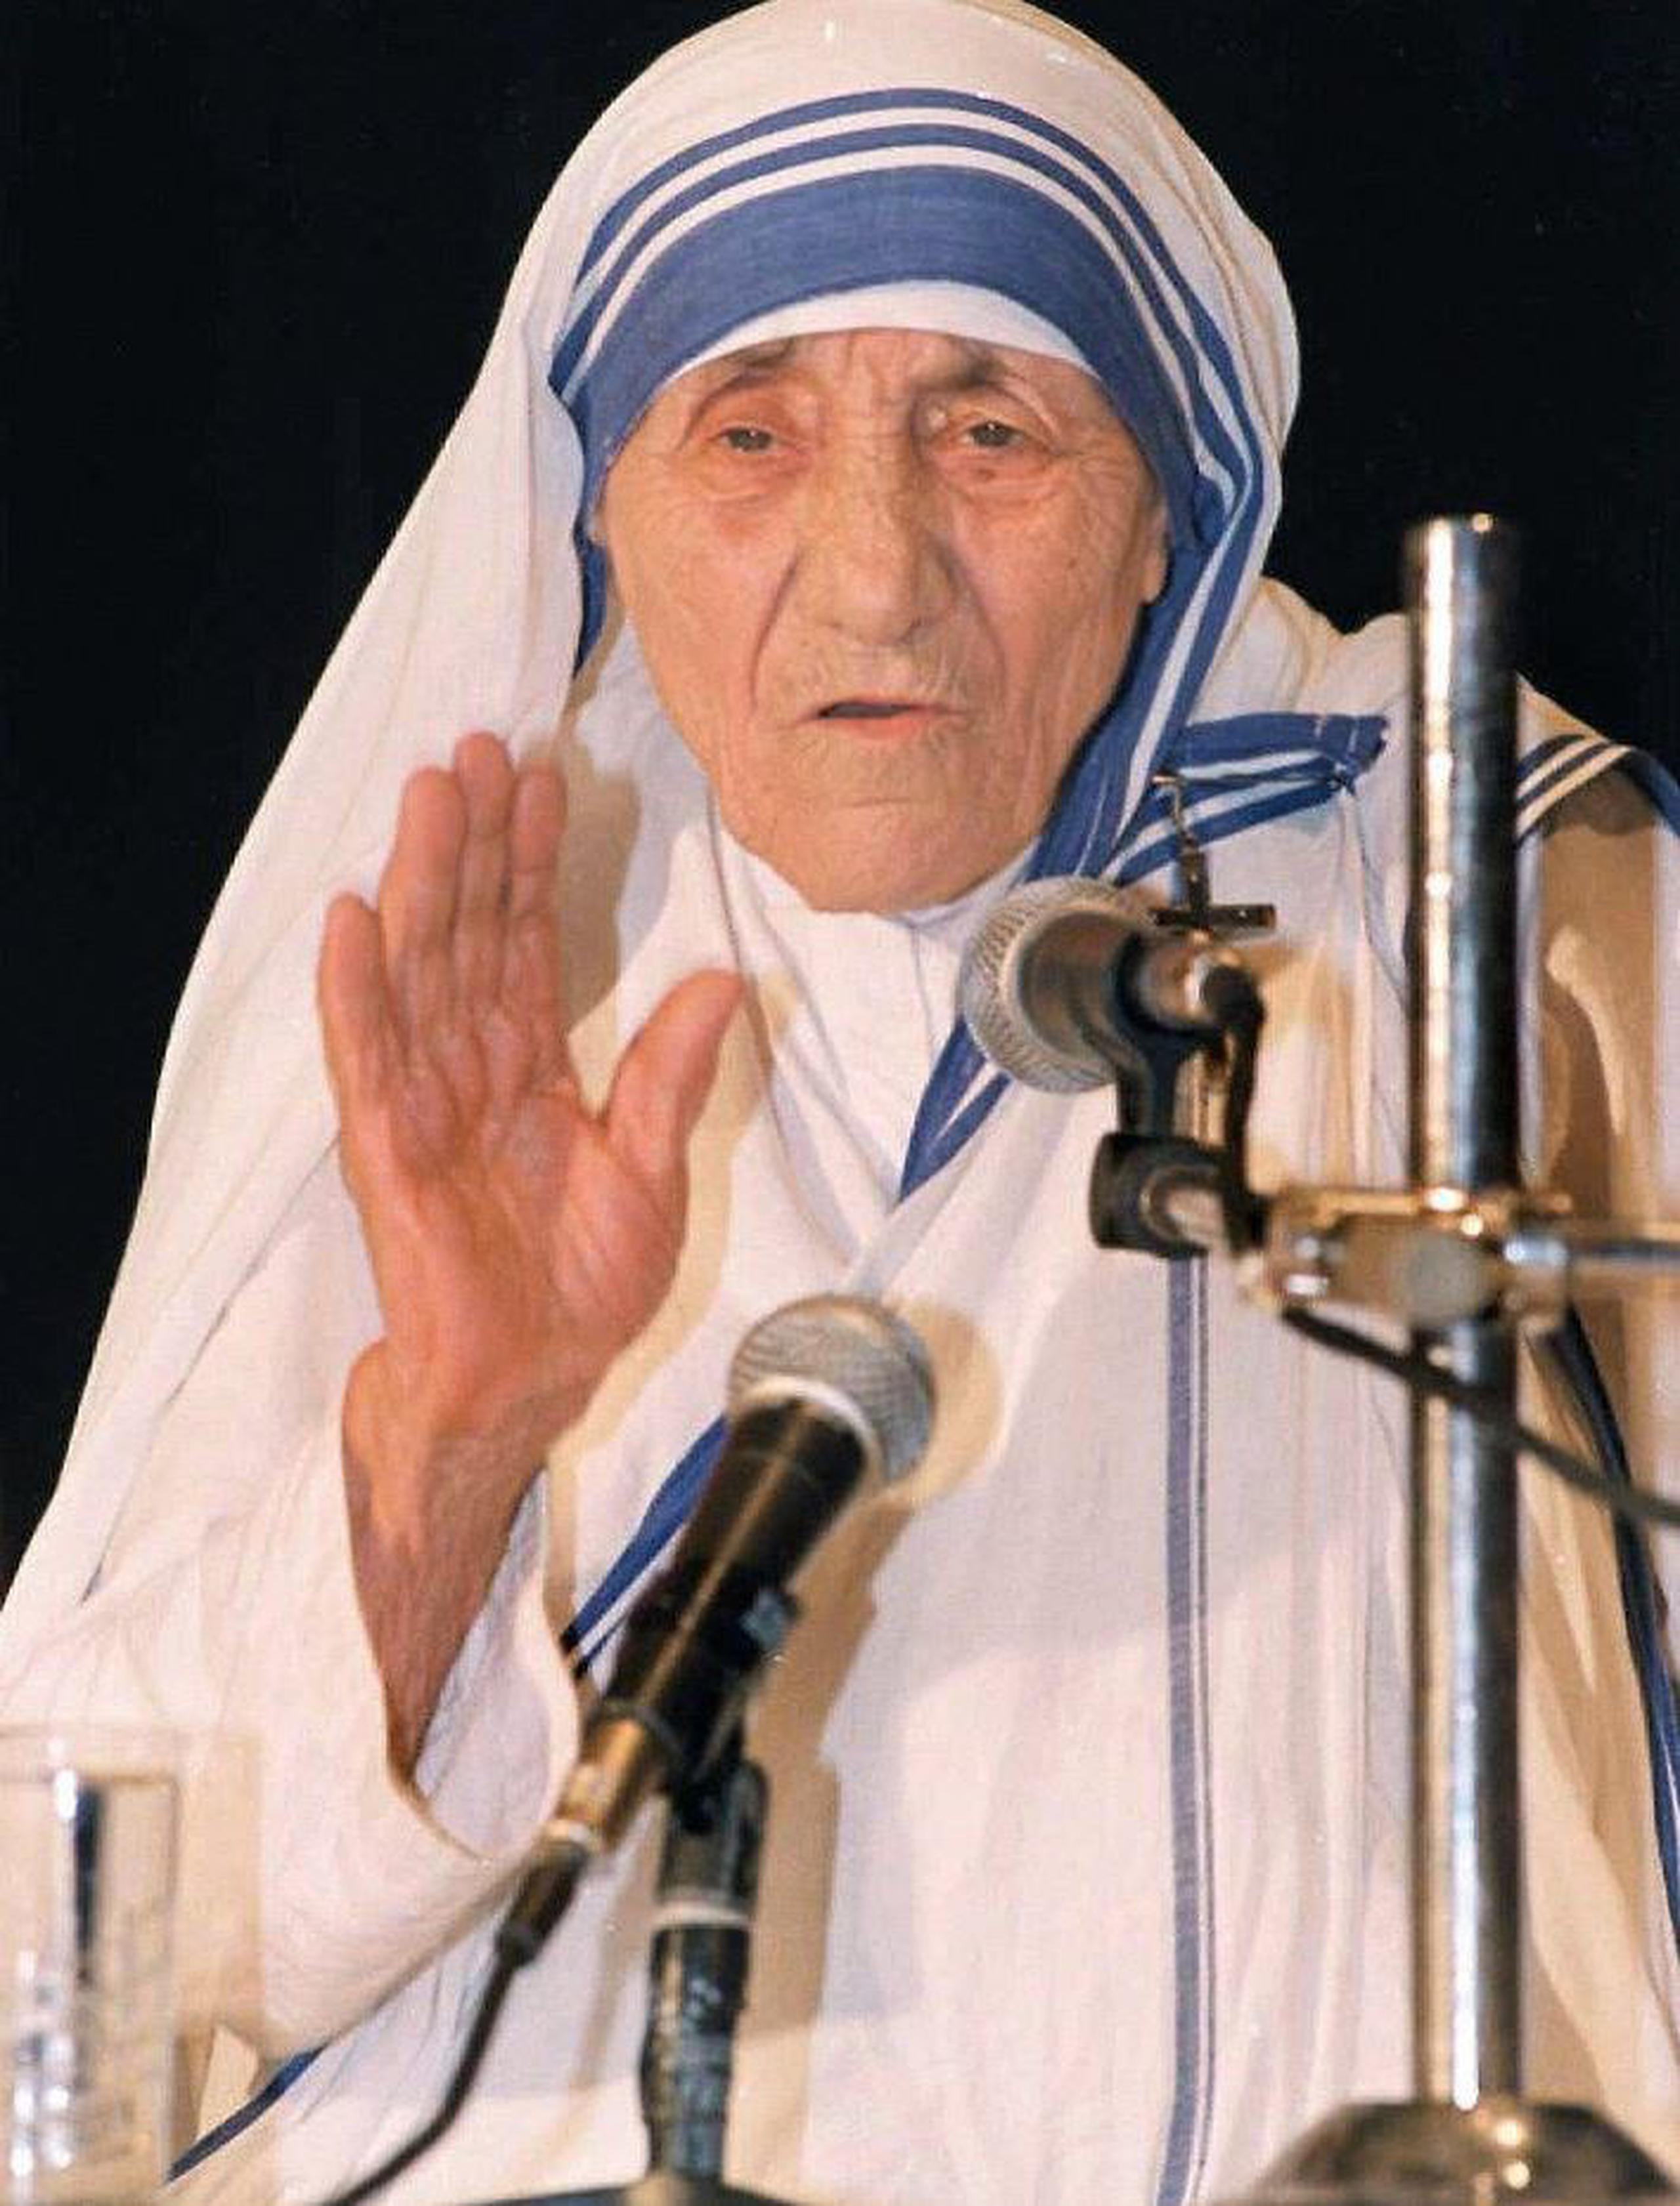 La Madre Teresa, ganadora del Nobel de la Paz, murió el 5 de septiembre de 1997 a los 87 años. (GFR Media)